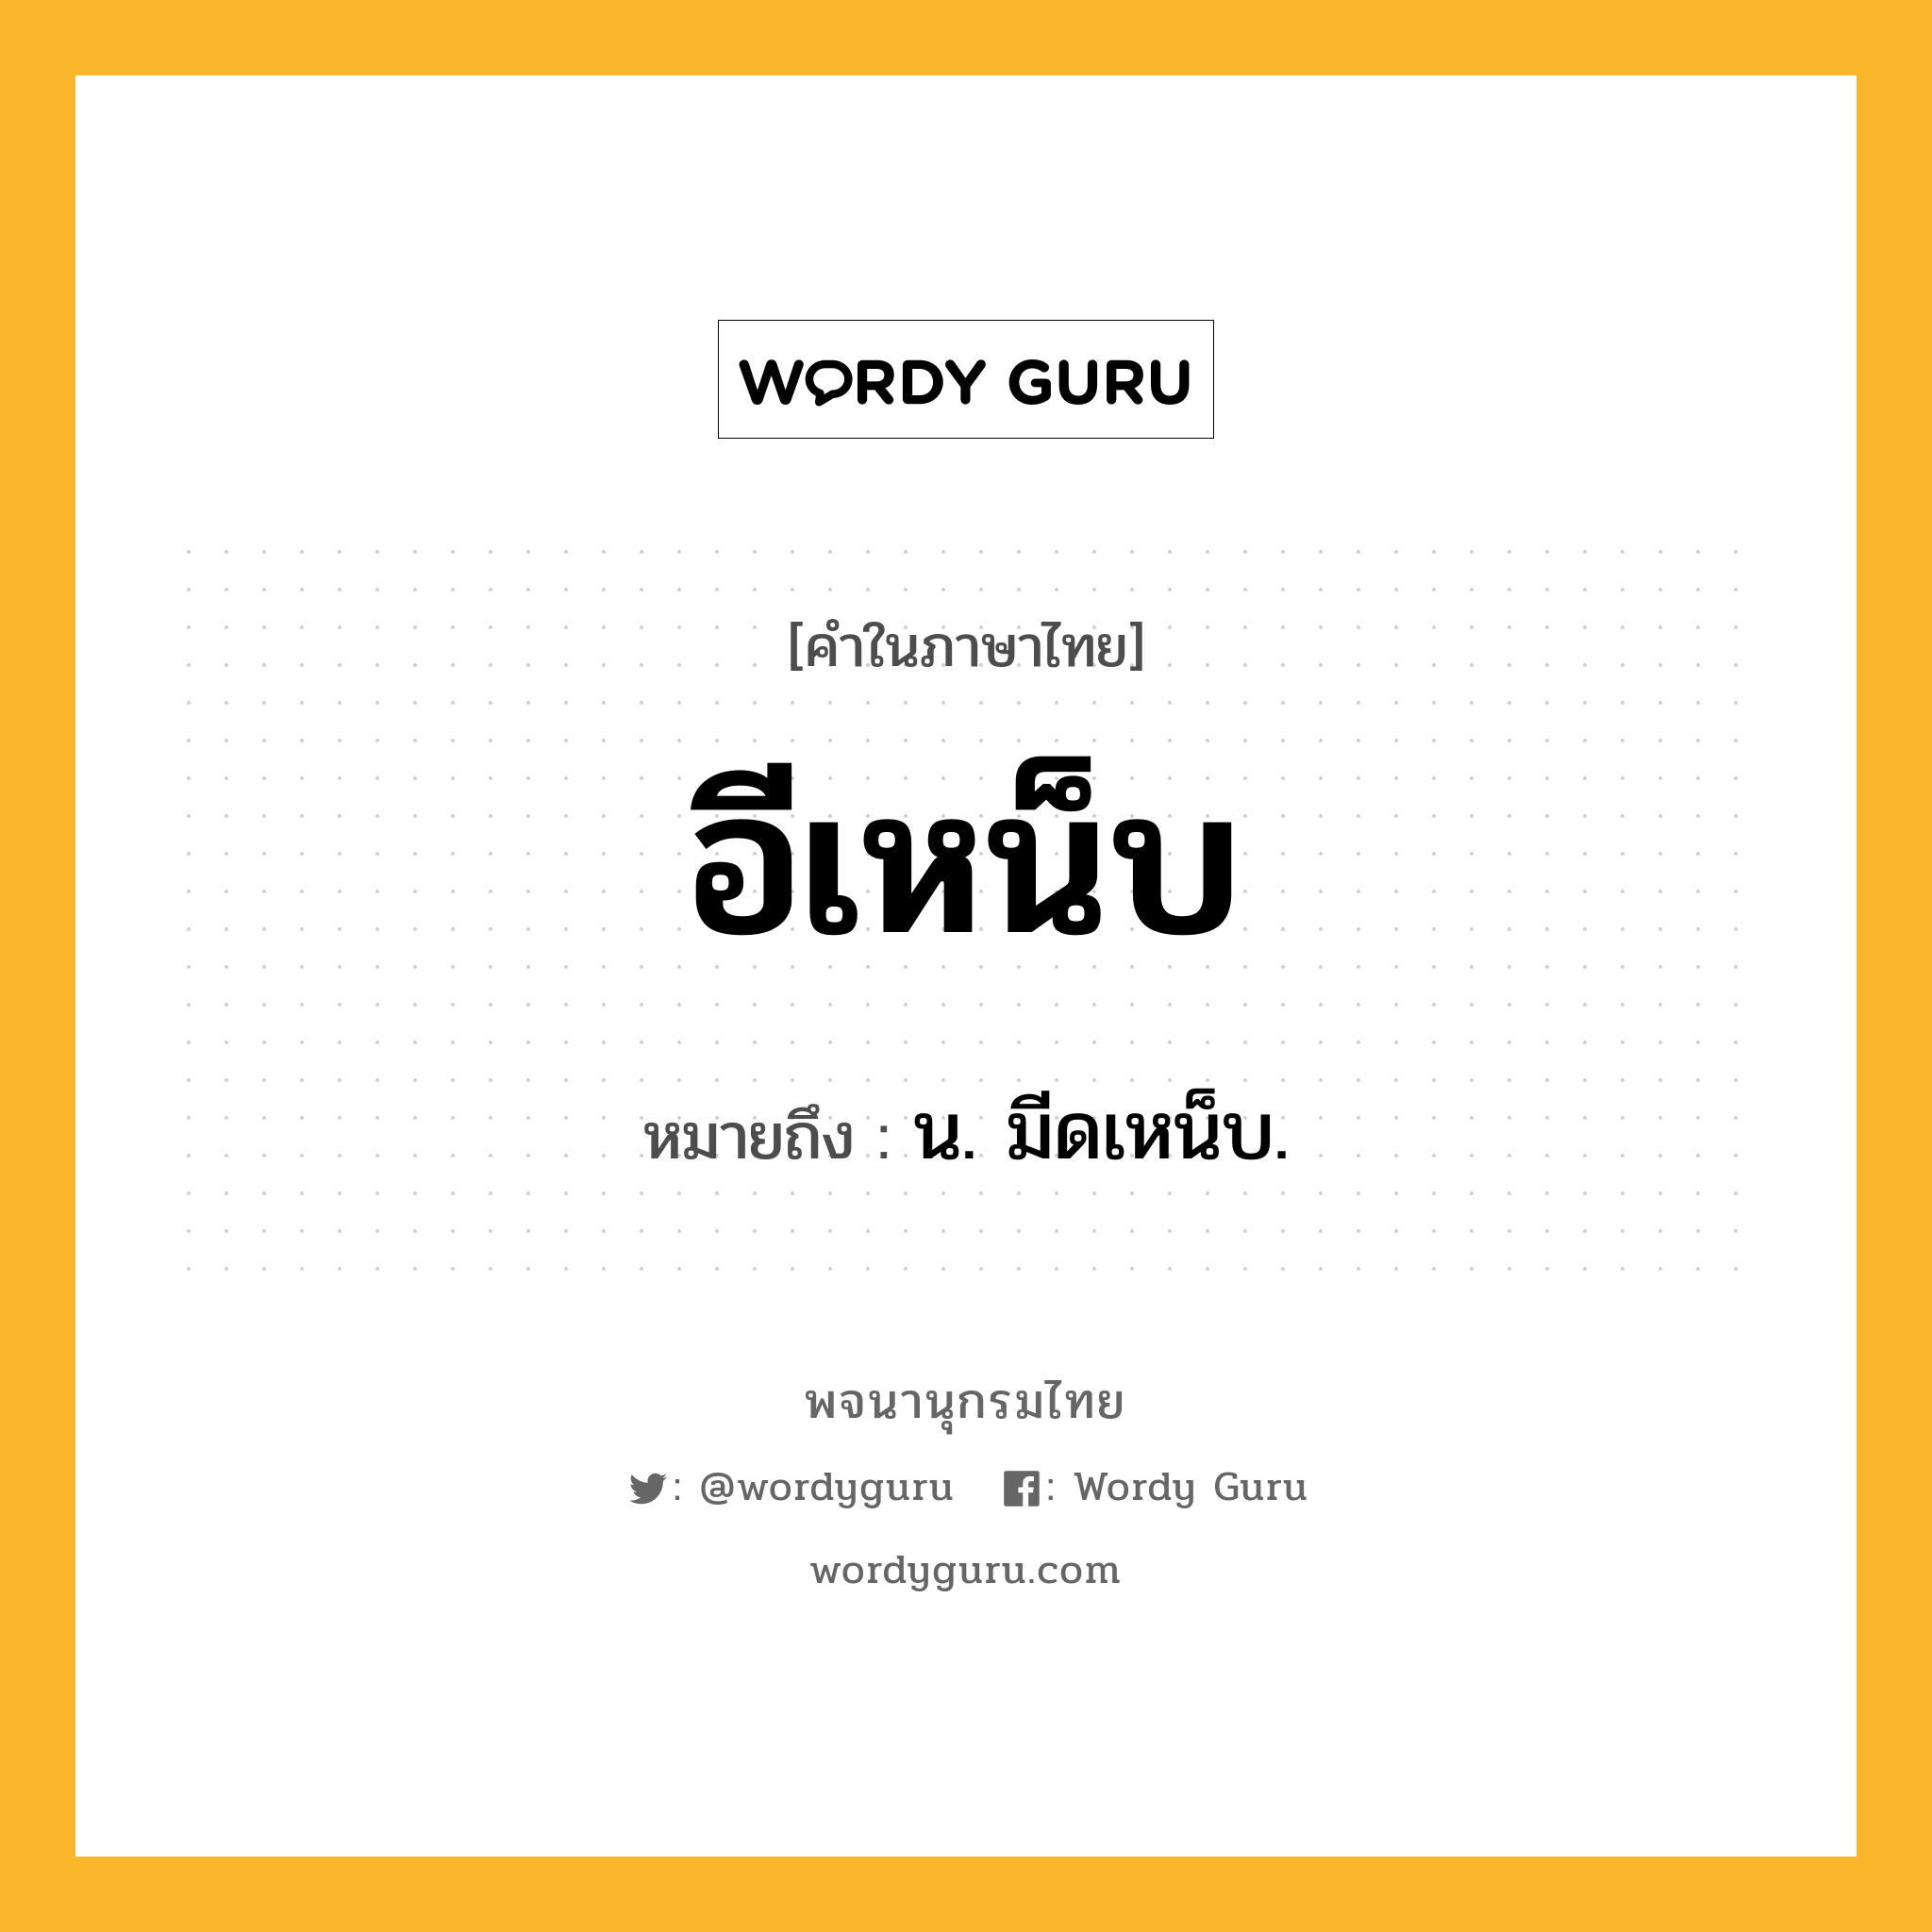 อีเหน็บ ความหมาย หมายถึงอะไร?, คำในภาษาไทย อีเหน็บ หมายถึง น. มีดเหน็บ.